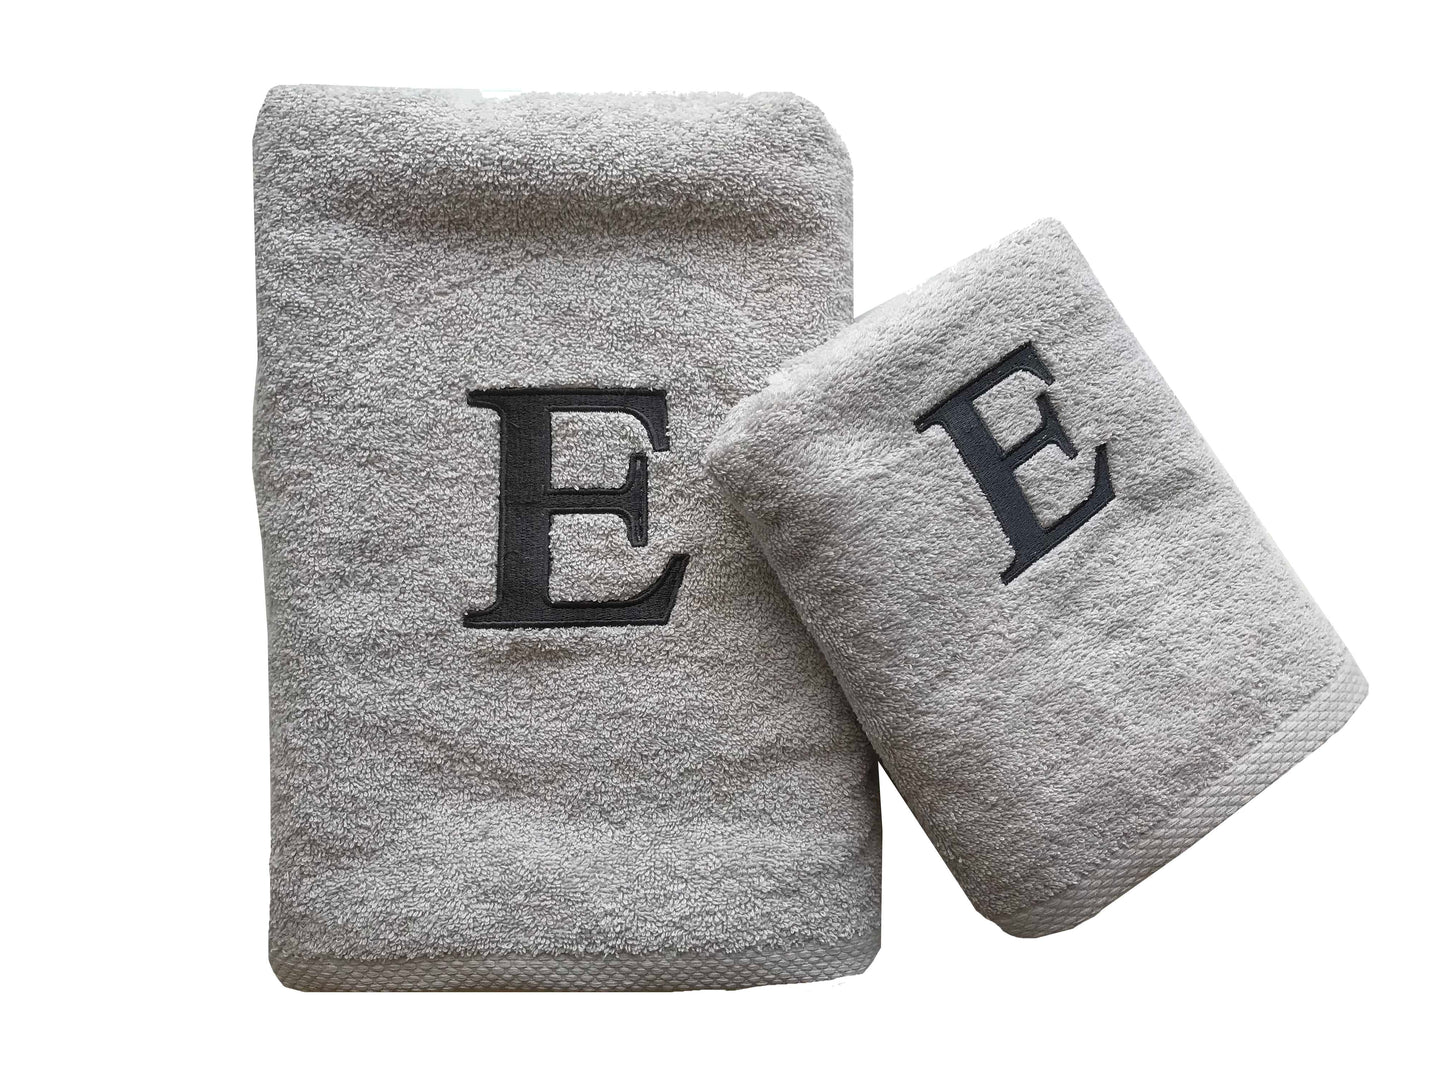 Premium Handtuch -  Mit edler Stickerei Buchstabe "E" - Vielseitig, Nachhaltig, Saugstark & Schnelltrocknend - 100% Baumwolle LMS-6642 Grau